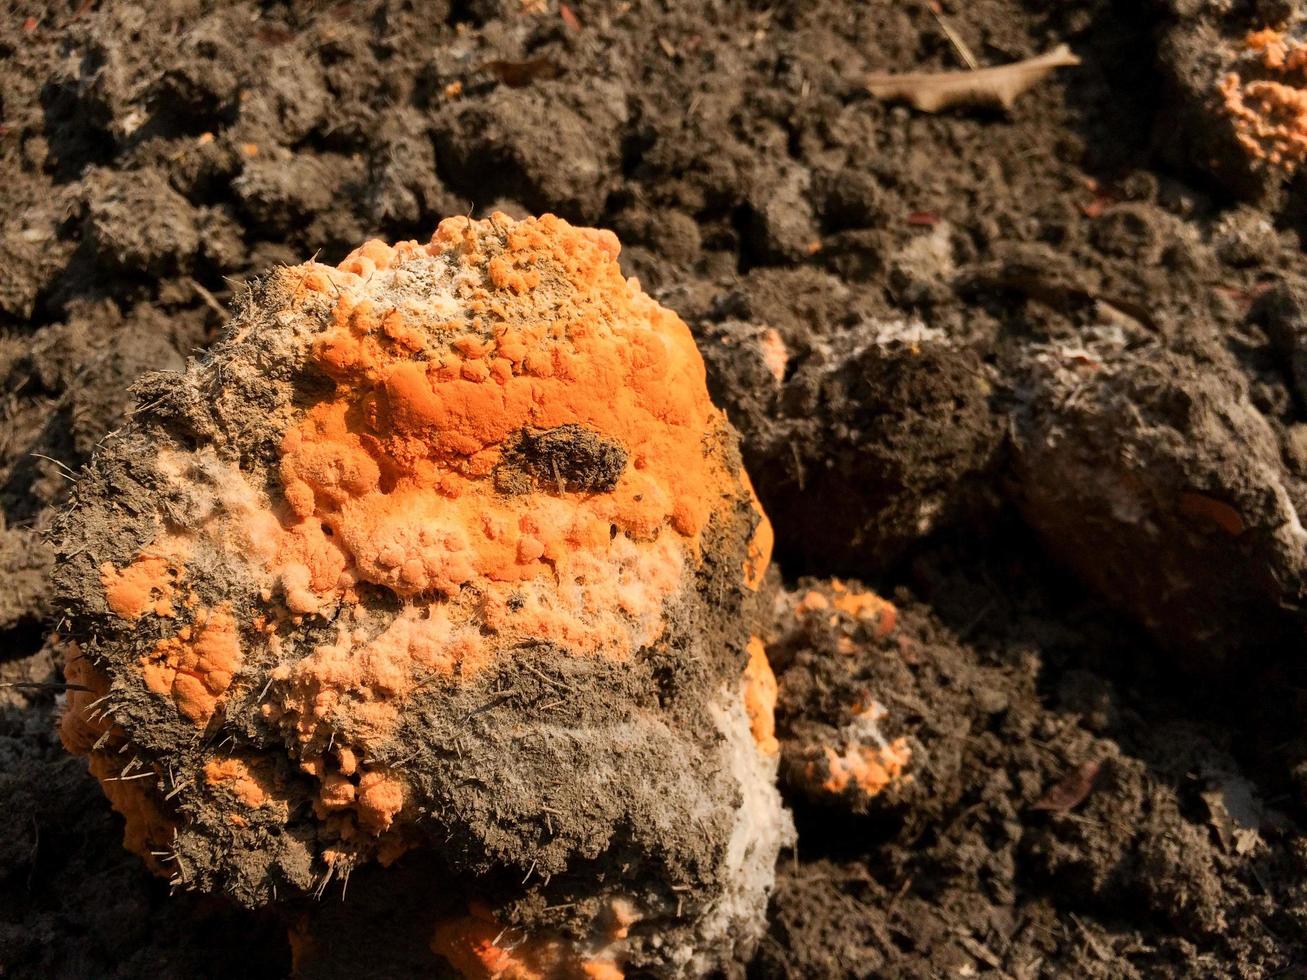 il fungo del primo piano o la muffa arancione cresce su un cumulo di fertilizzante nero, generando humus attraverso il processo di fermentazione. fase di divisione cellulare e distribuzione delle spore foto